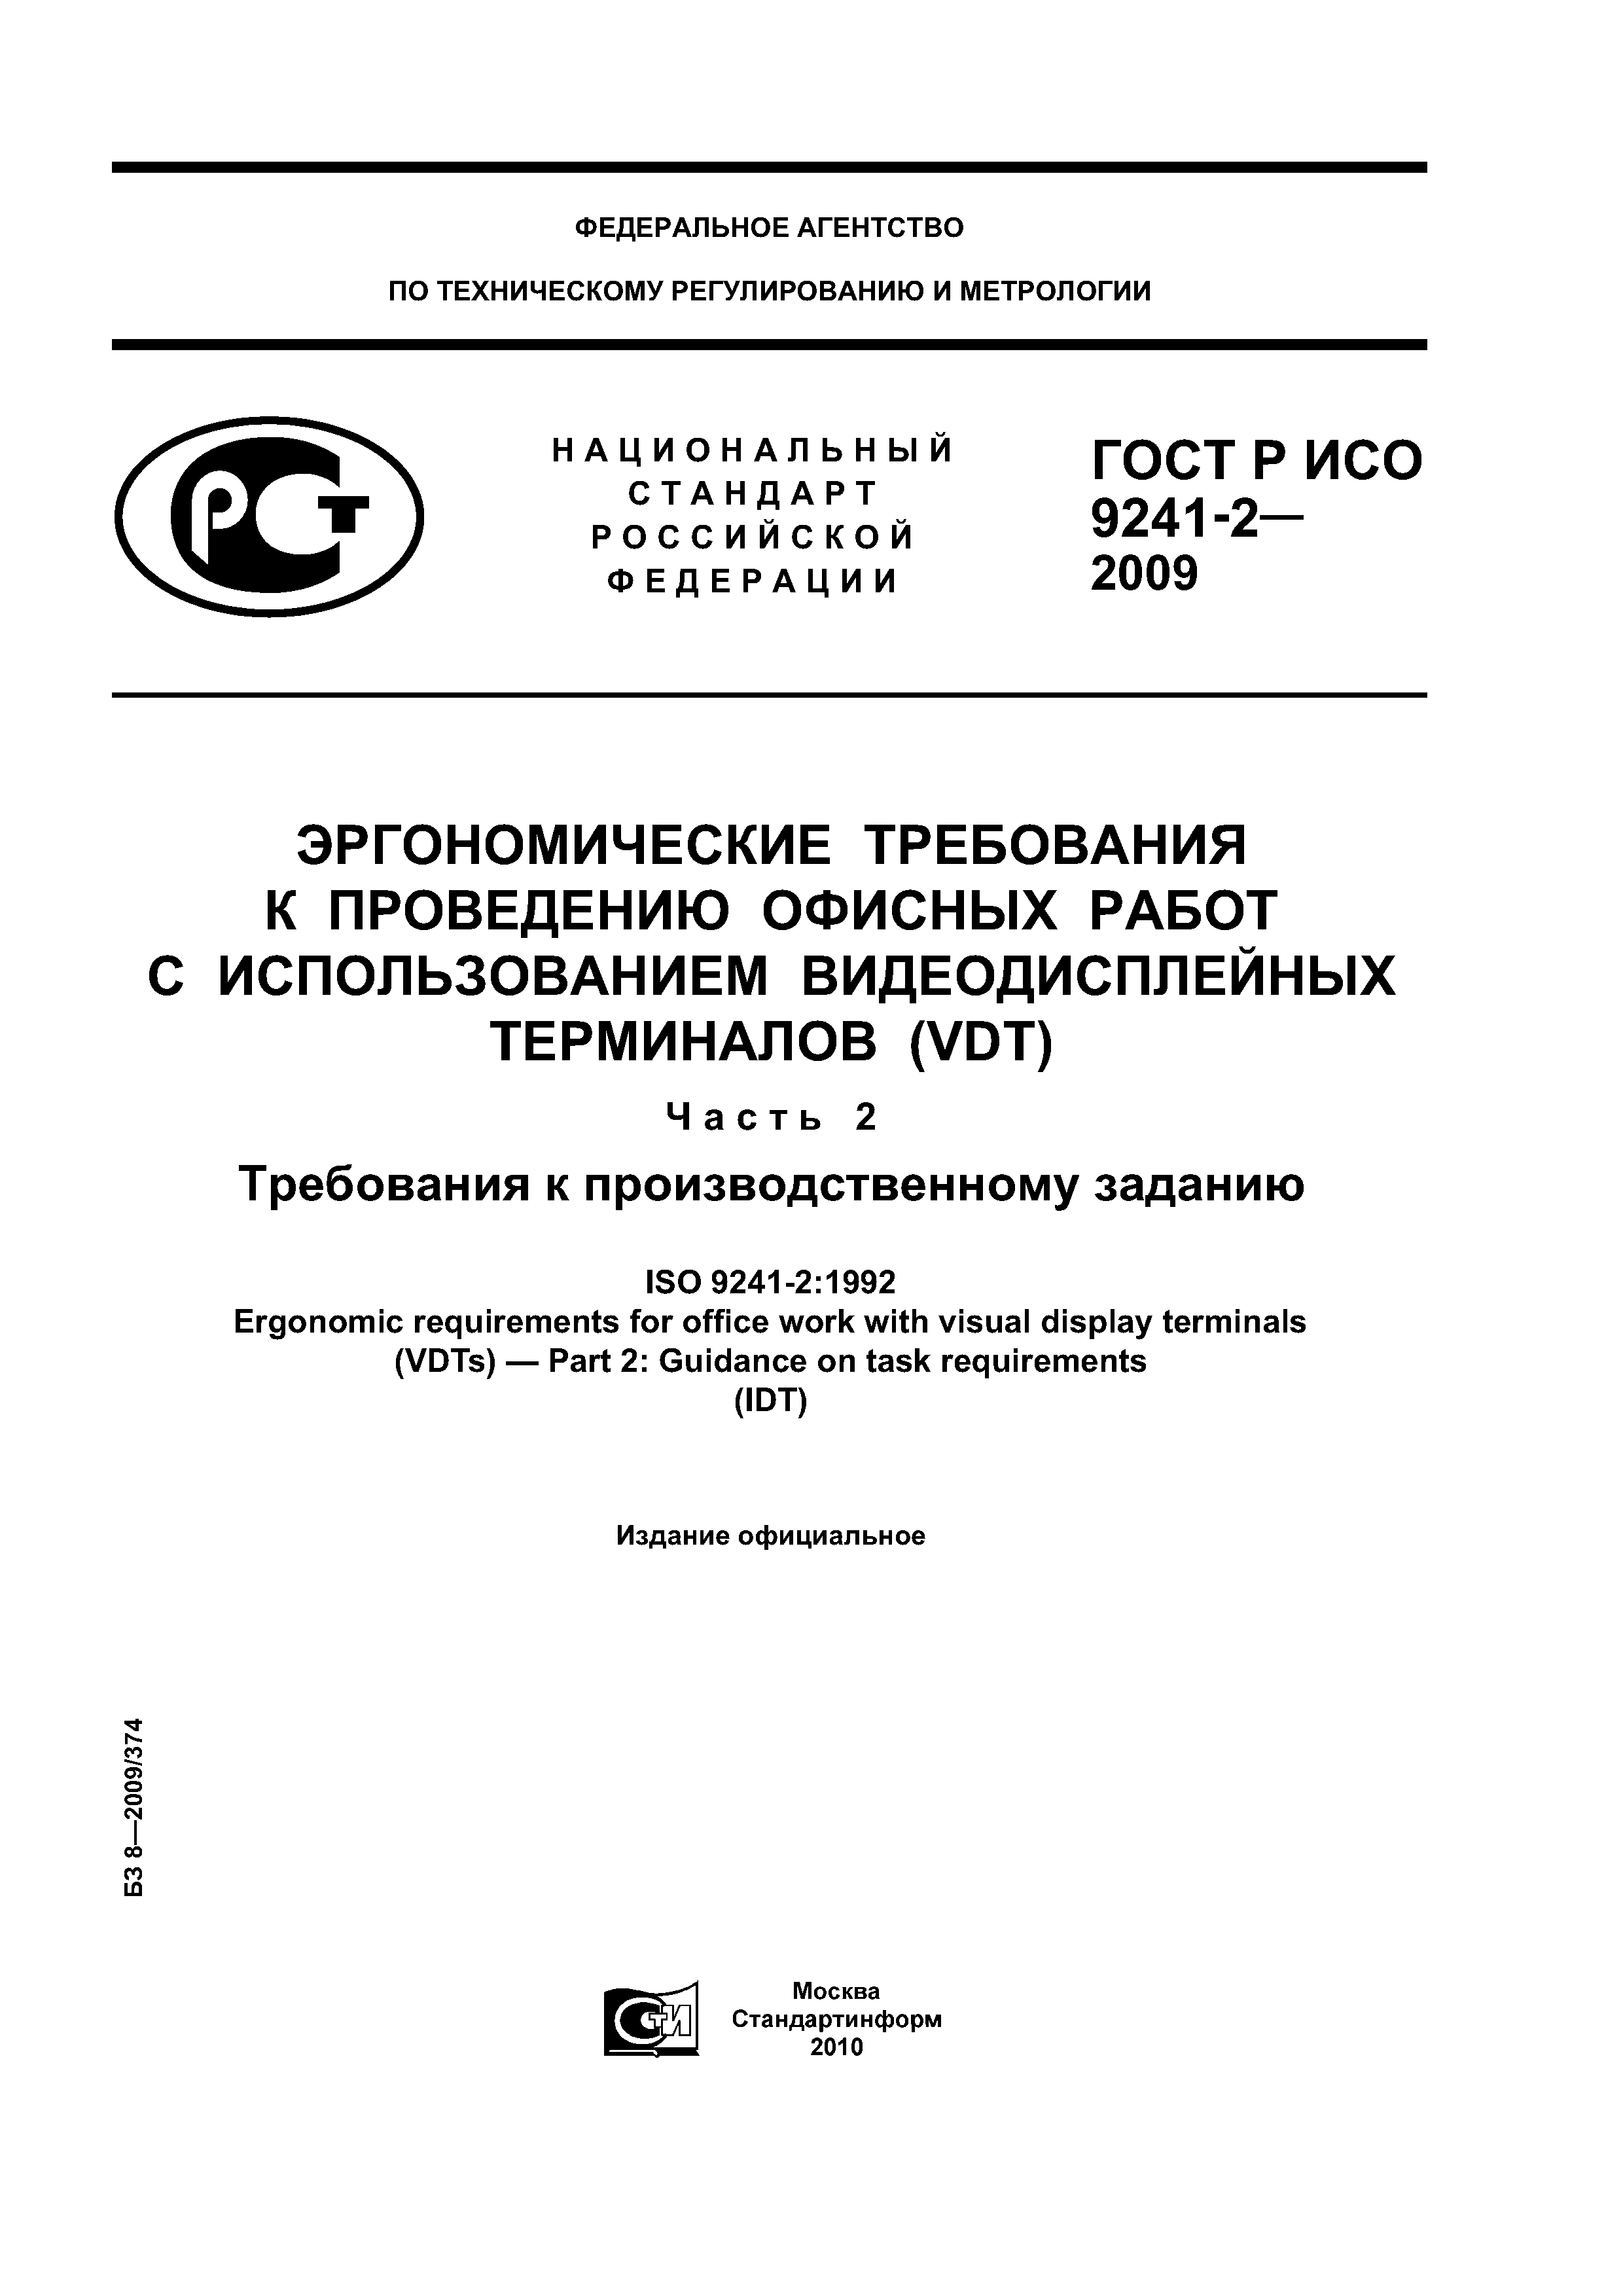 ГОСТ Р ИСО 9241-2-2009